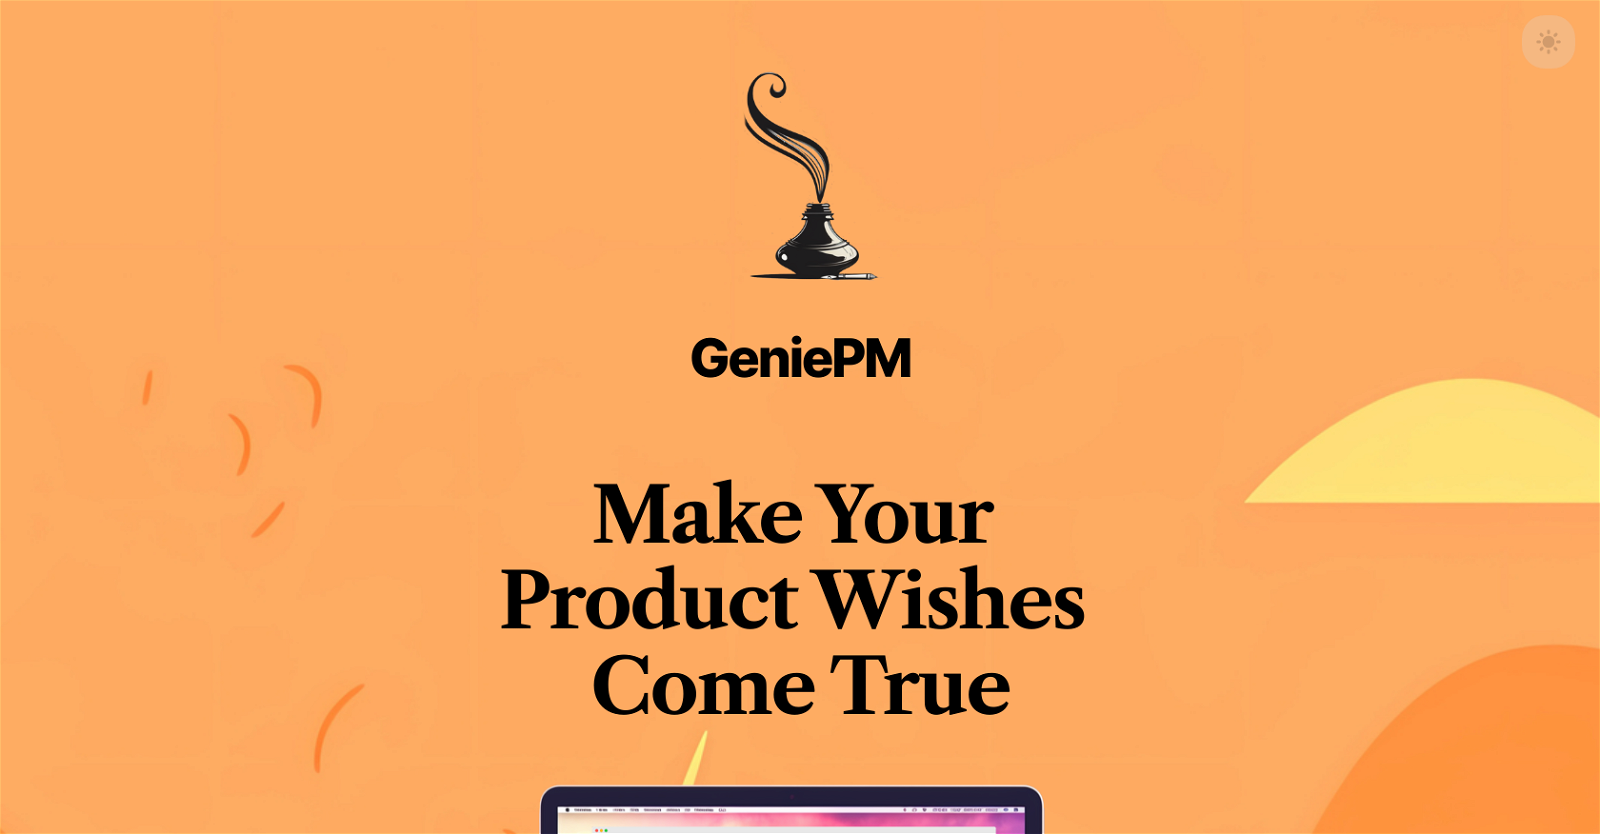 GeniePM website